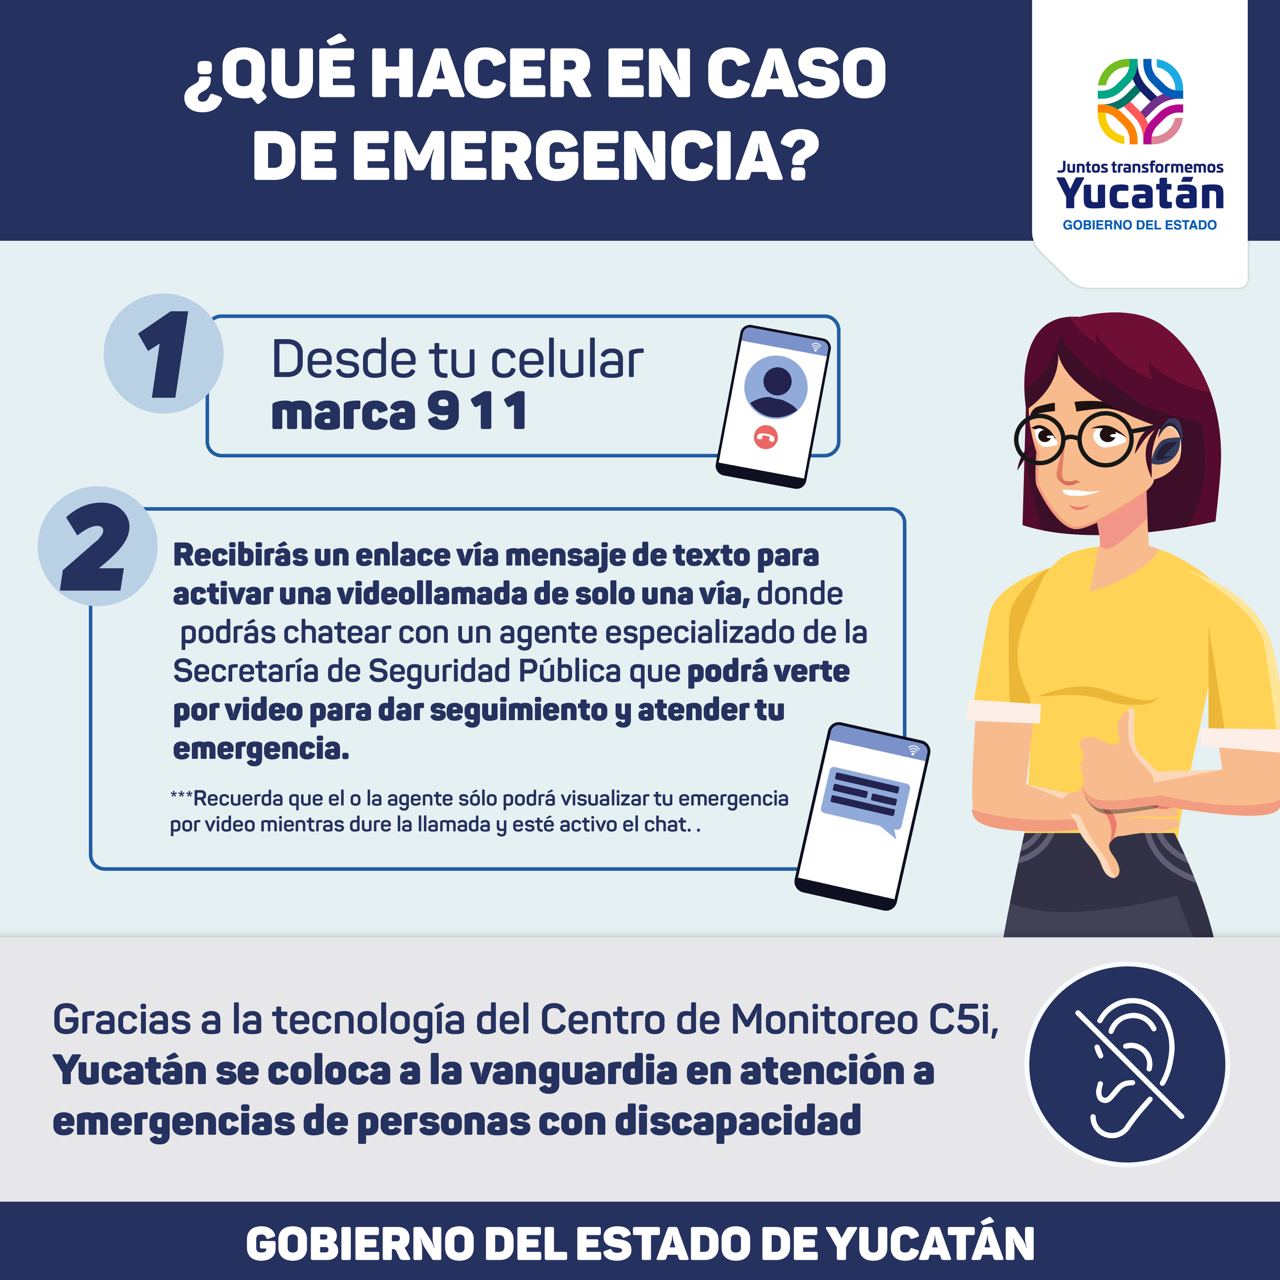 Yucatán aplicará tecnología para emergencias de personas con discapacidad auditiva